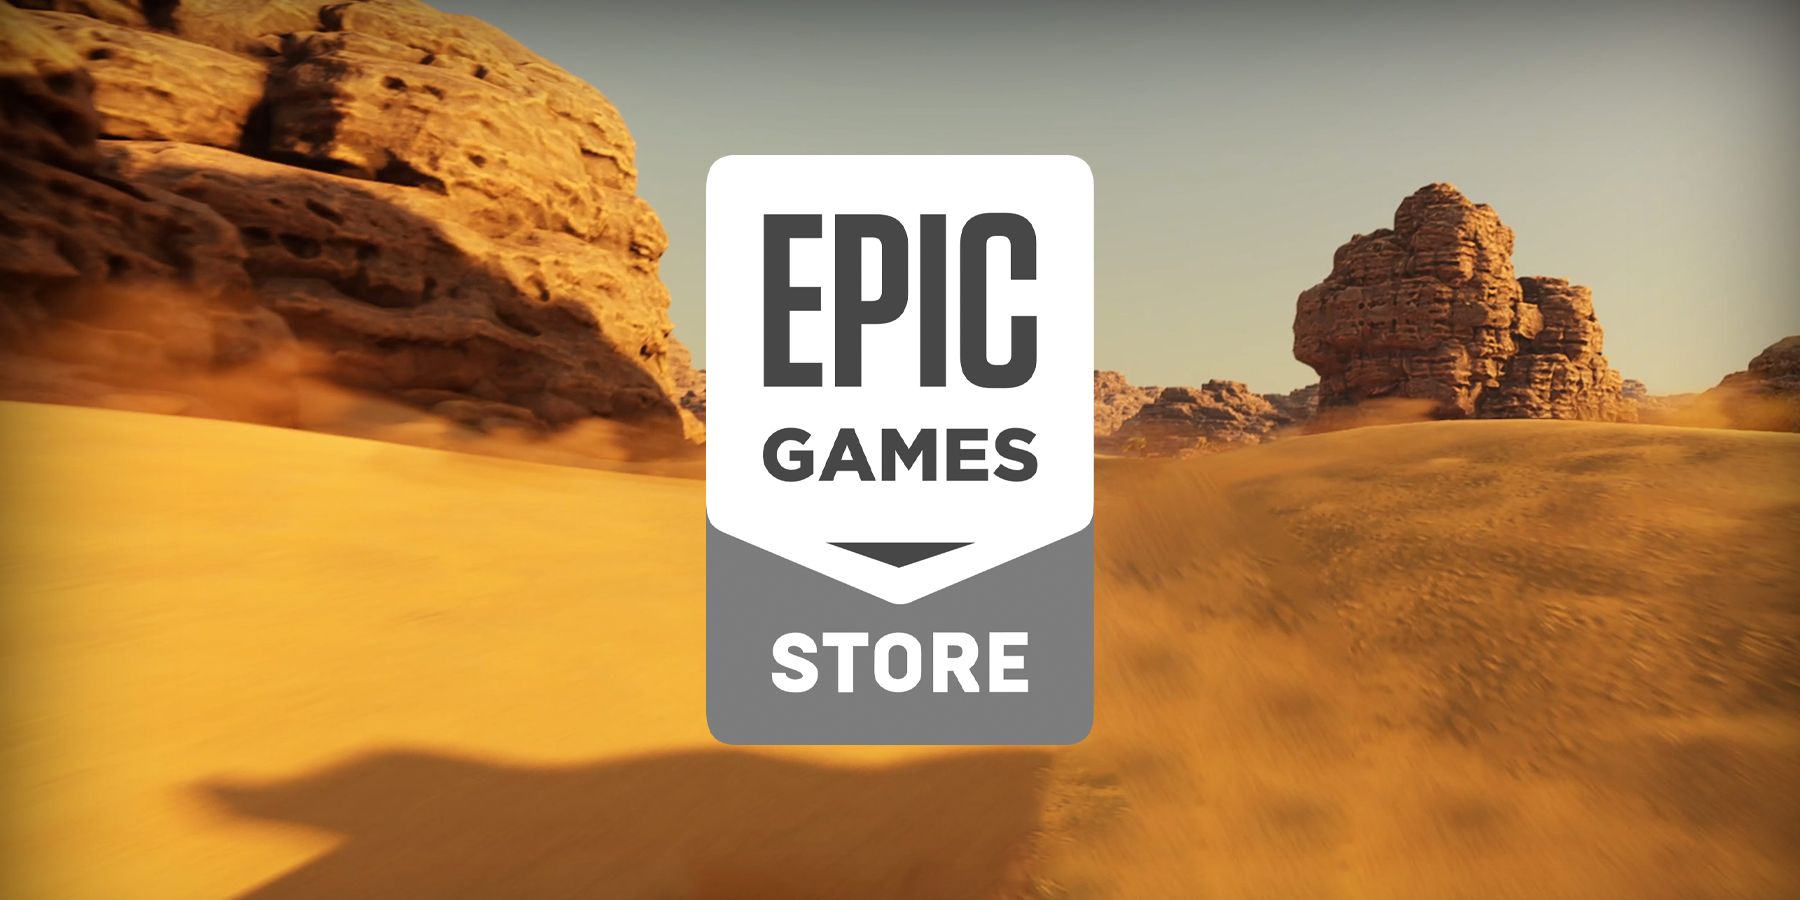 epic games store dakar desert rally